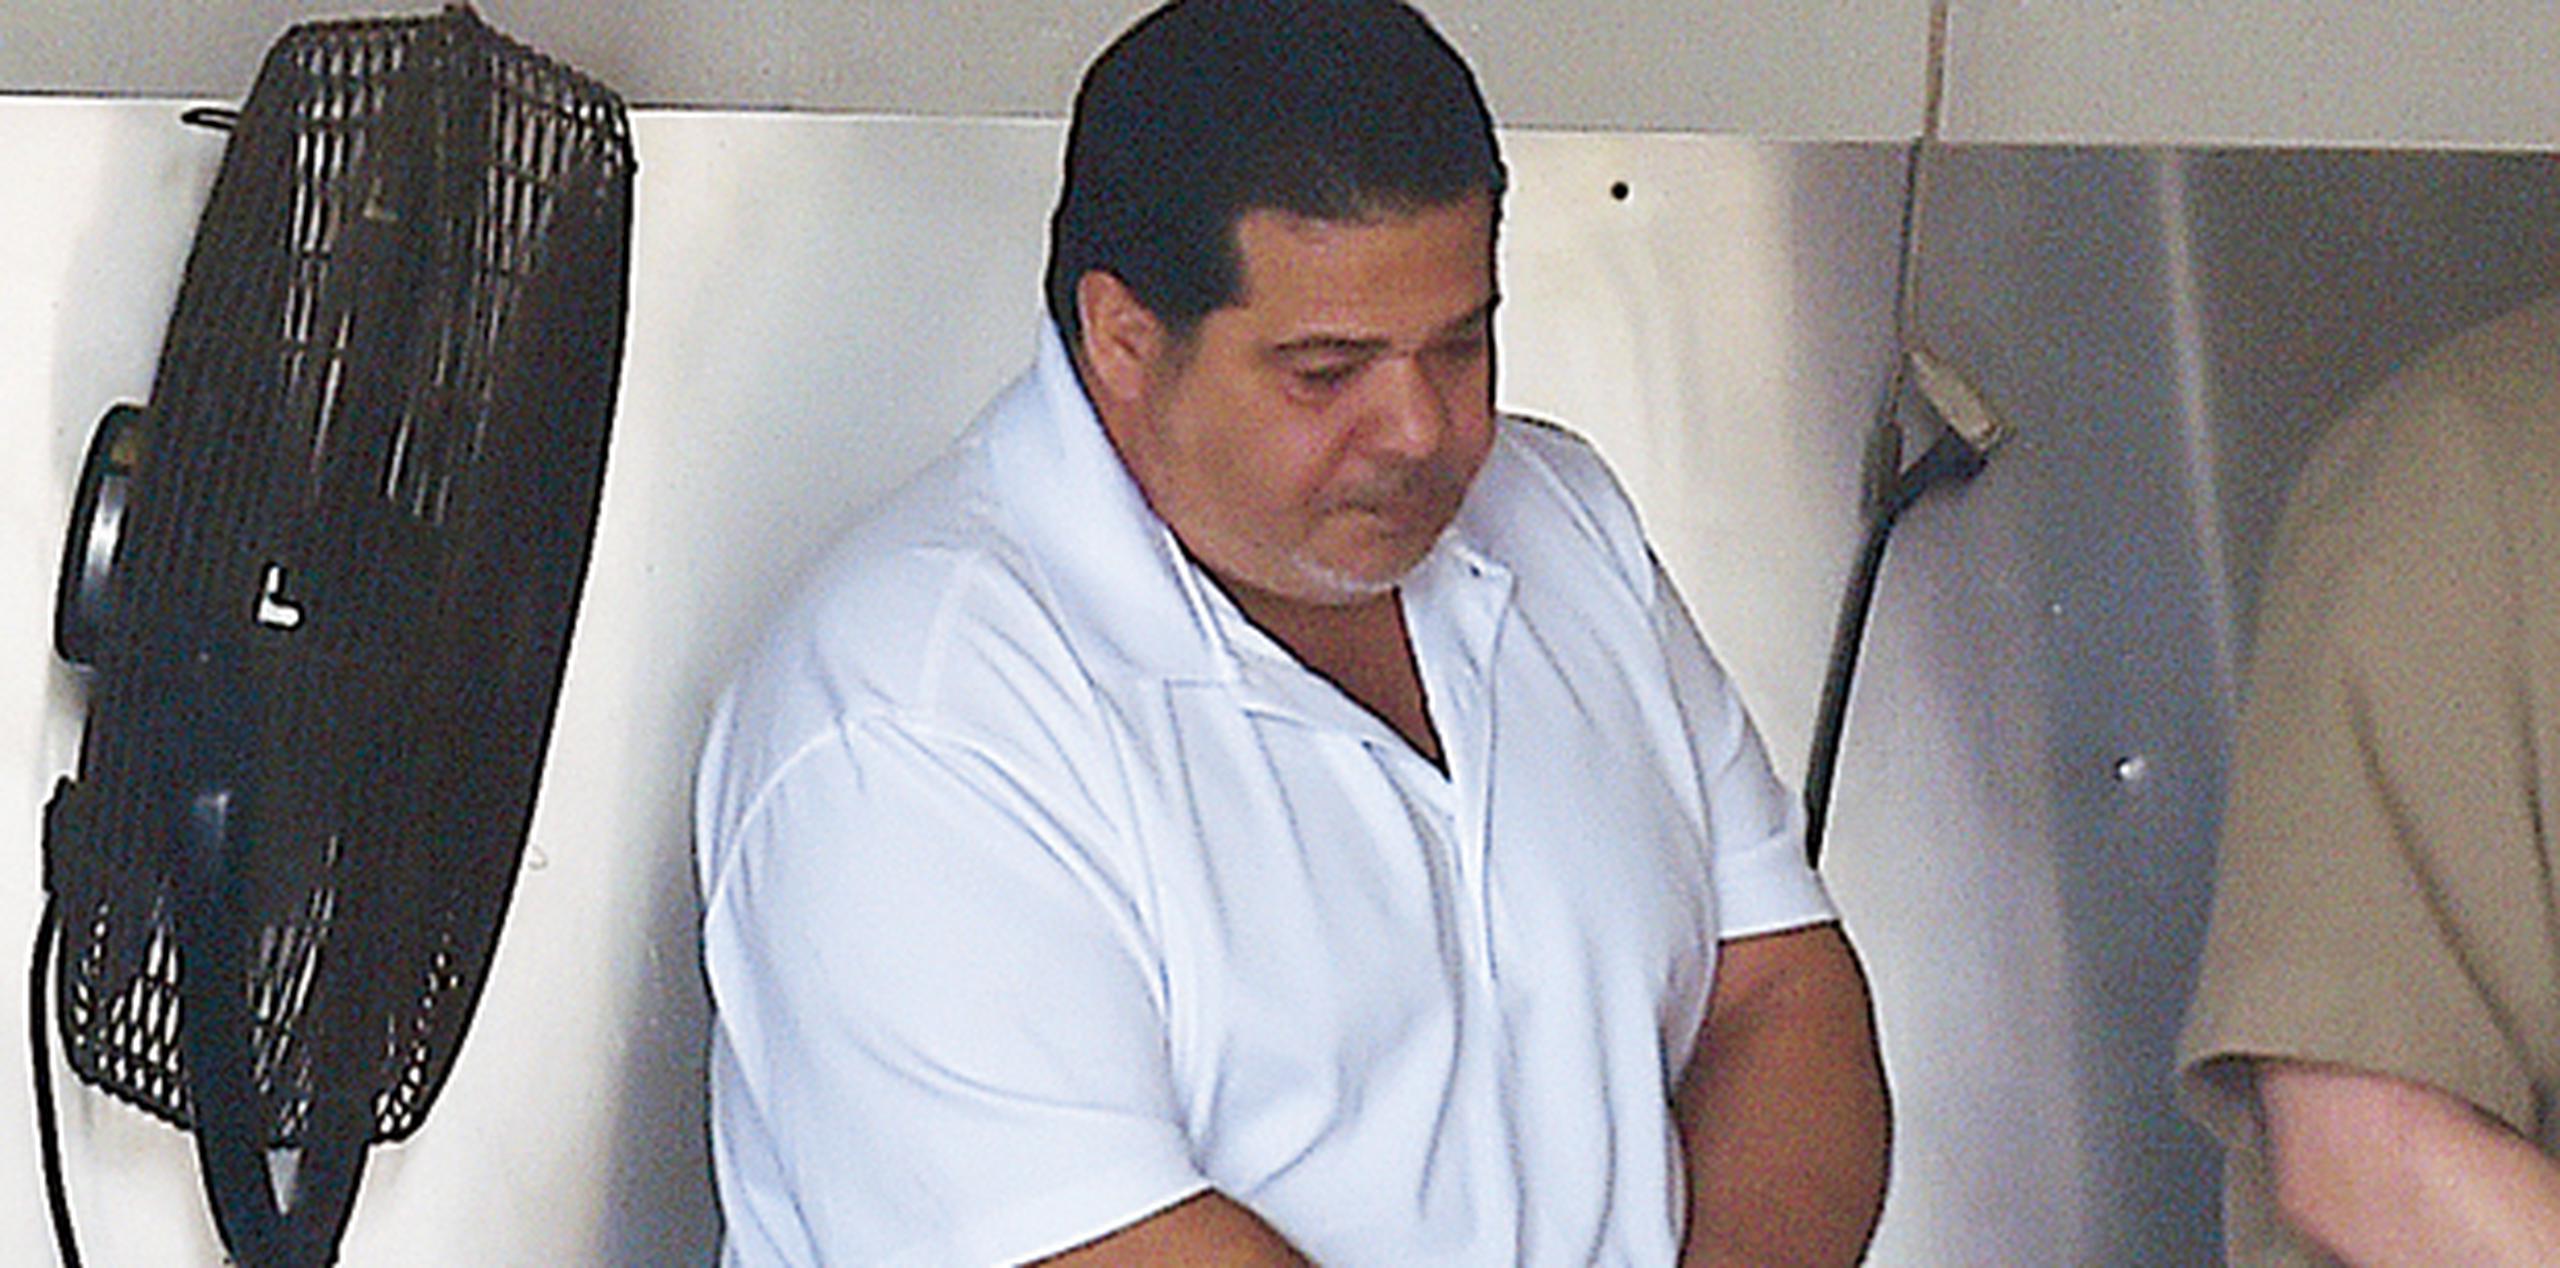 El representante del Ministerio Público enfocó la mayor parte de su argumentación en el caso incoado contra Rivera Solís en el estado de la Florida, donde salió absuelto de un homicidio. (Archivo)